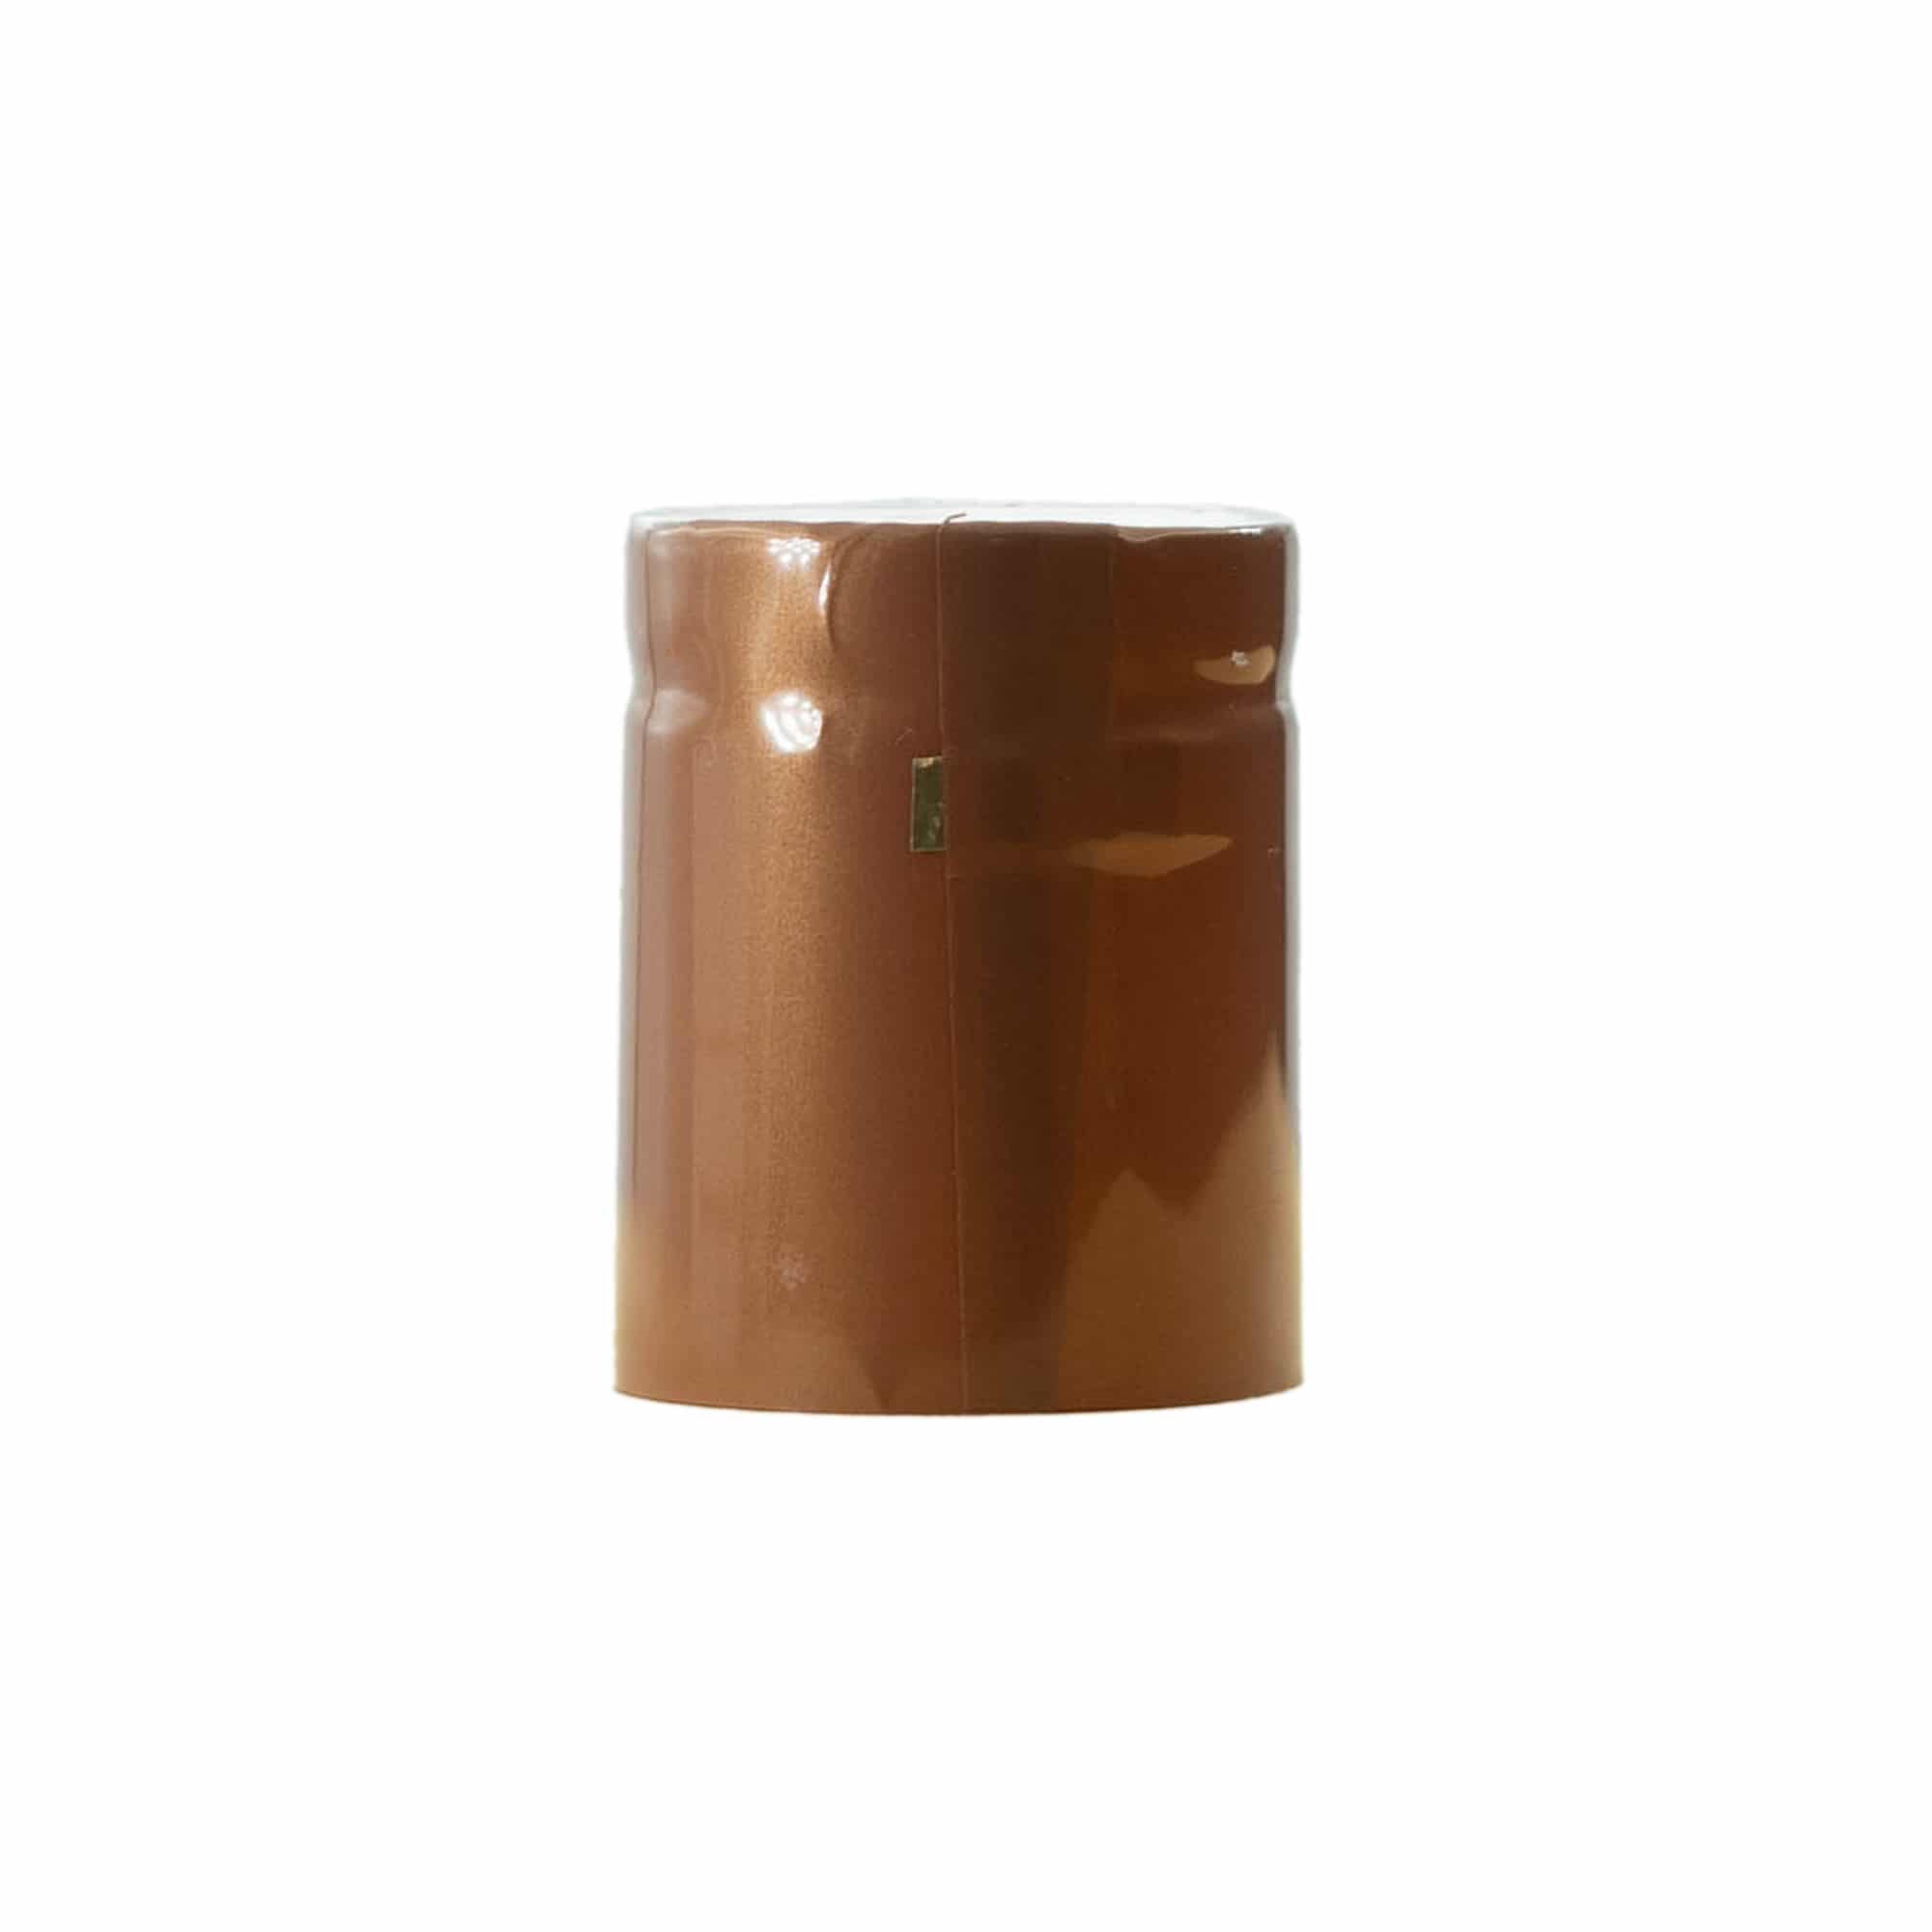 Capsula termoretraibile 32x41, plastica PVC, bronzo